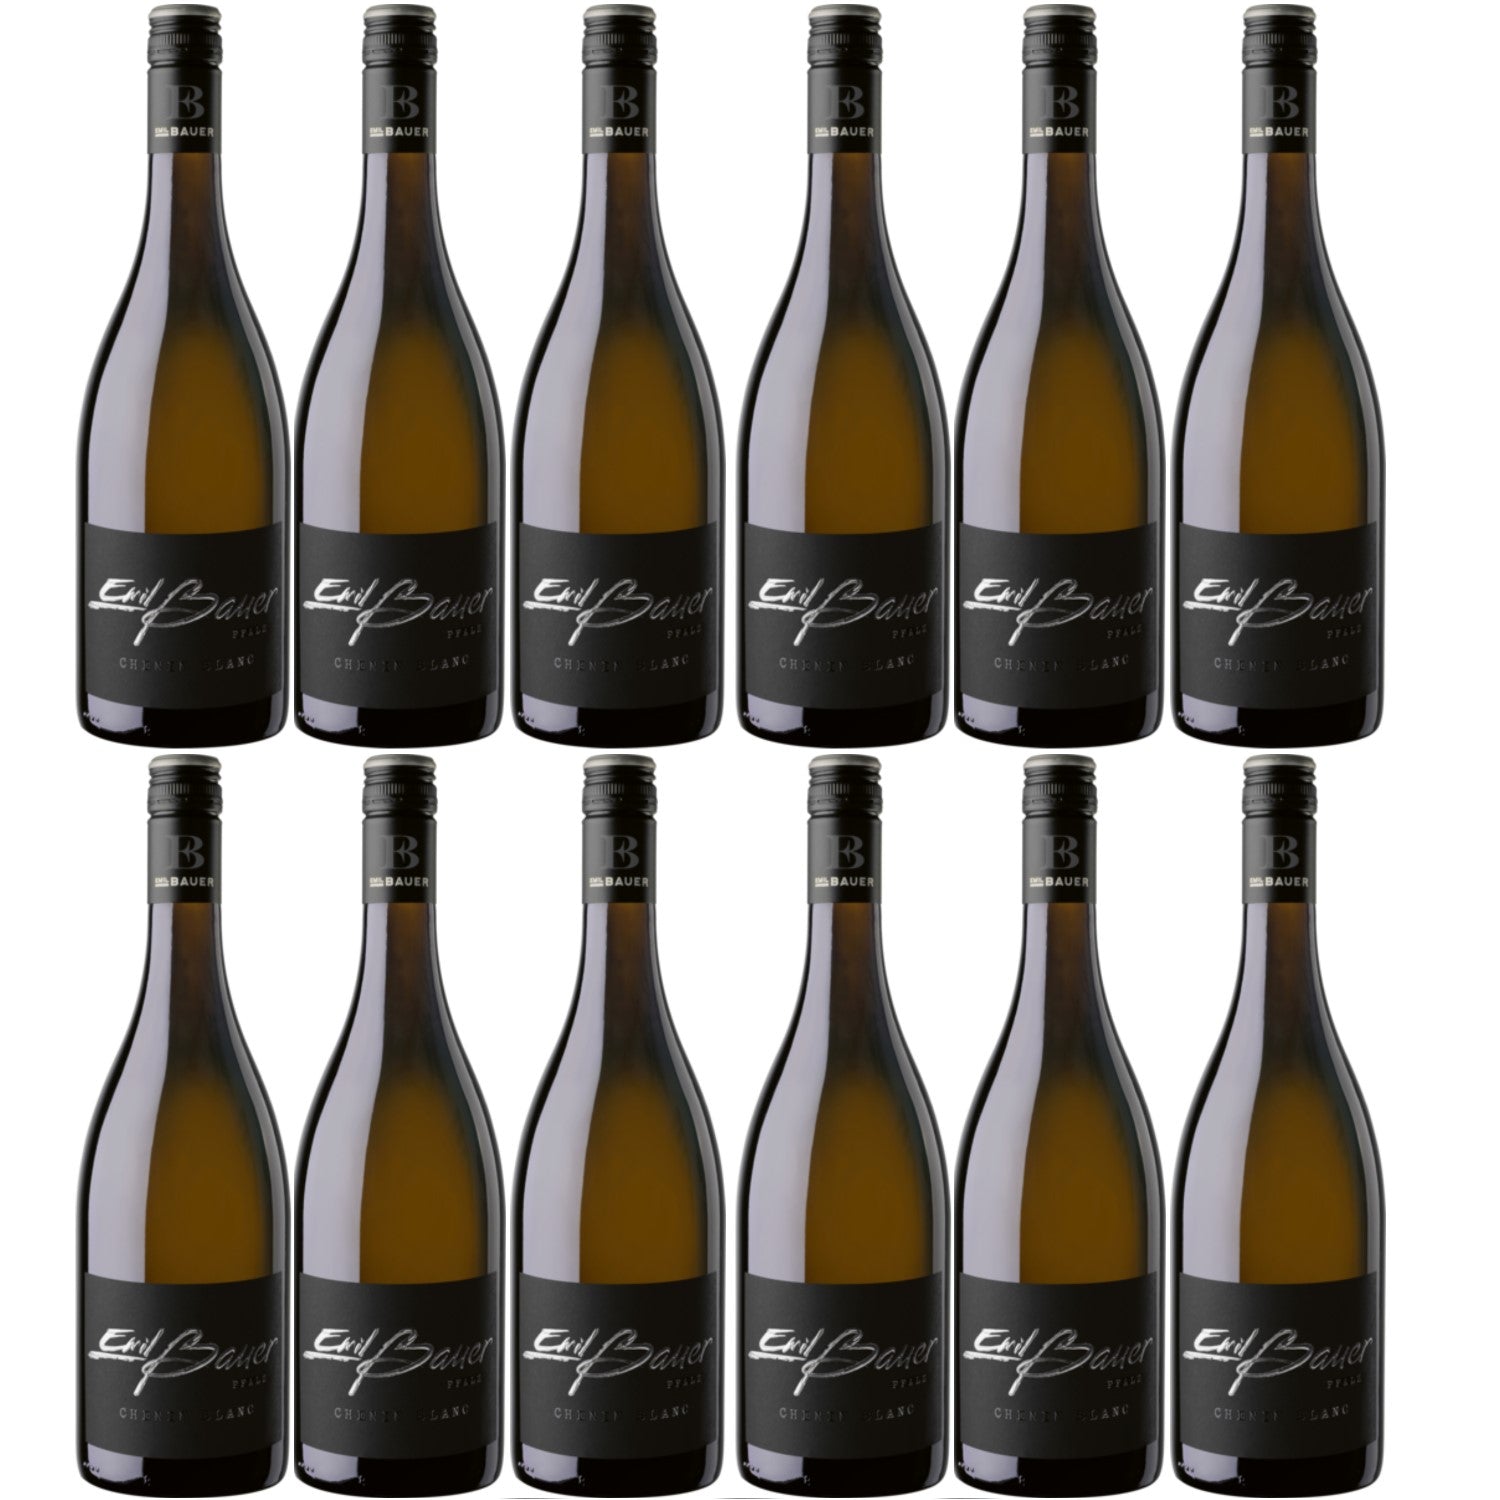 Emil Bauer Black Label Chenin Blanc QbA Weißwein Wein trocken Deutschland (12 x 0.75l) - Versanel -